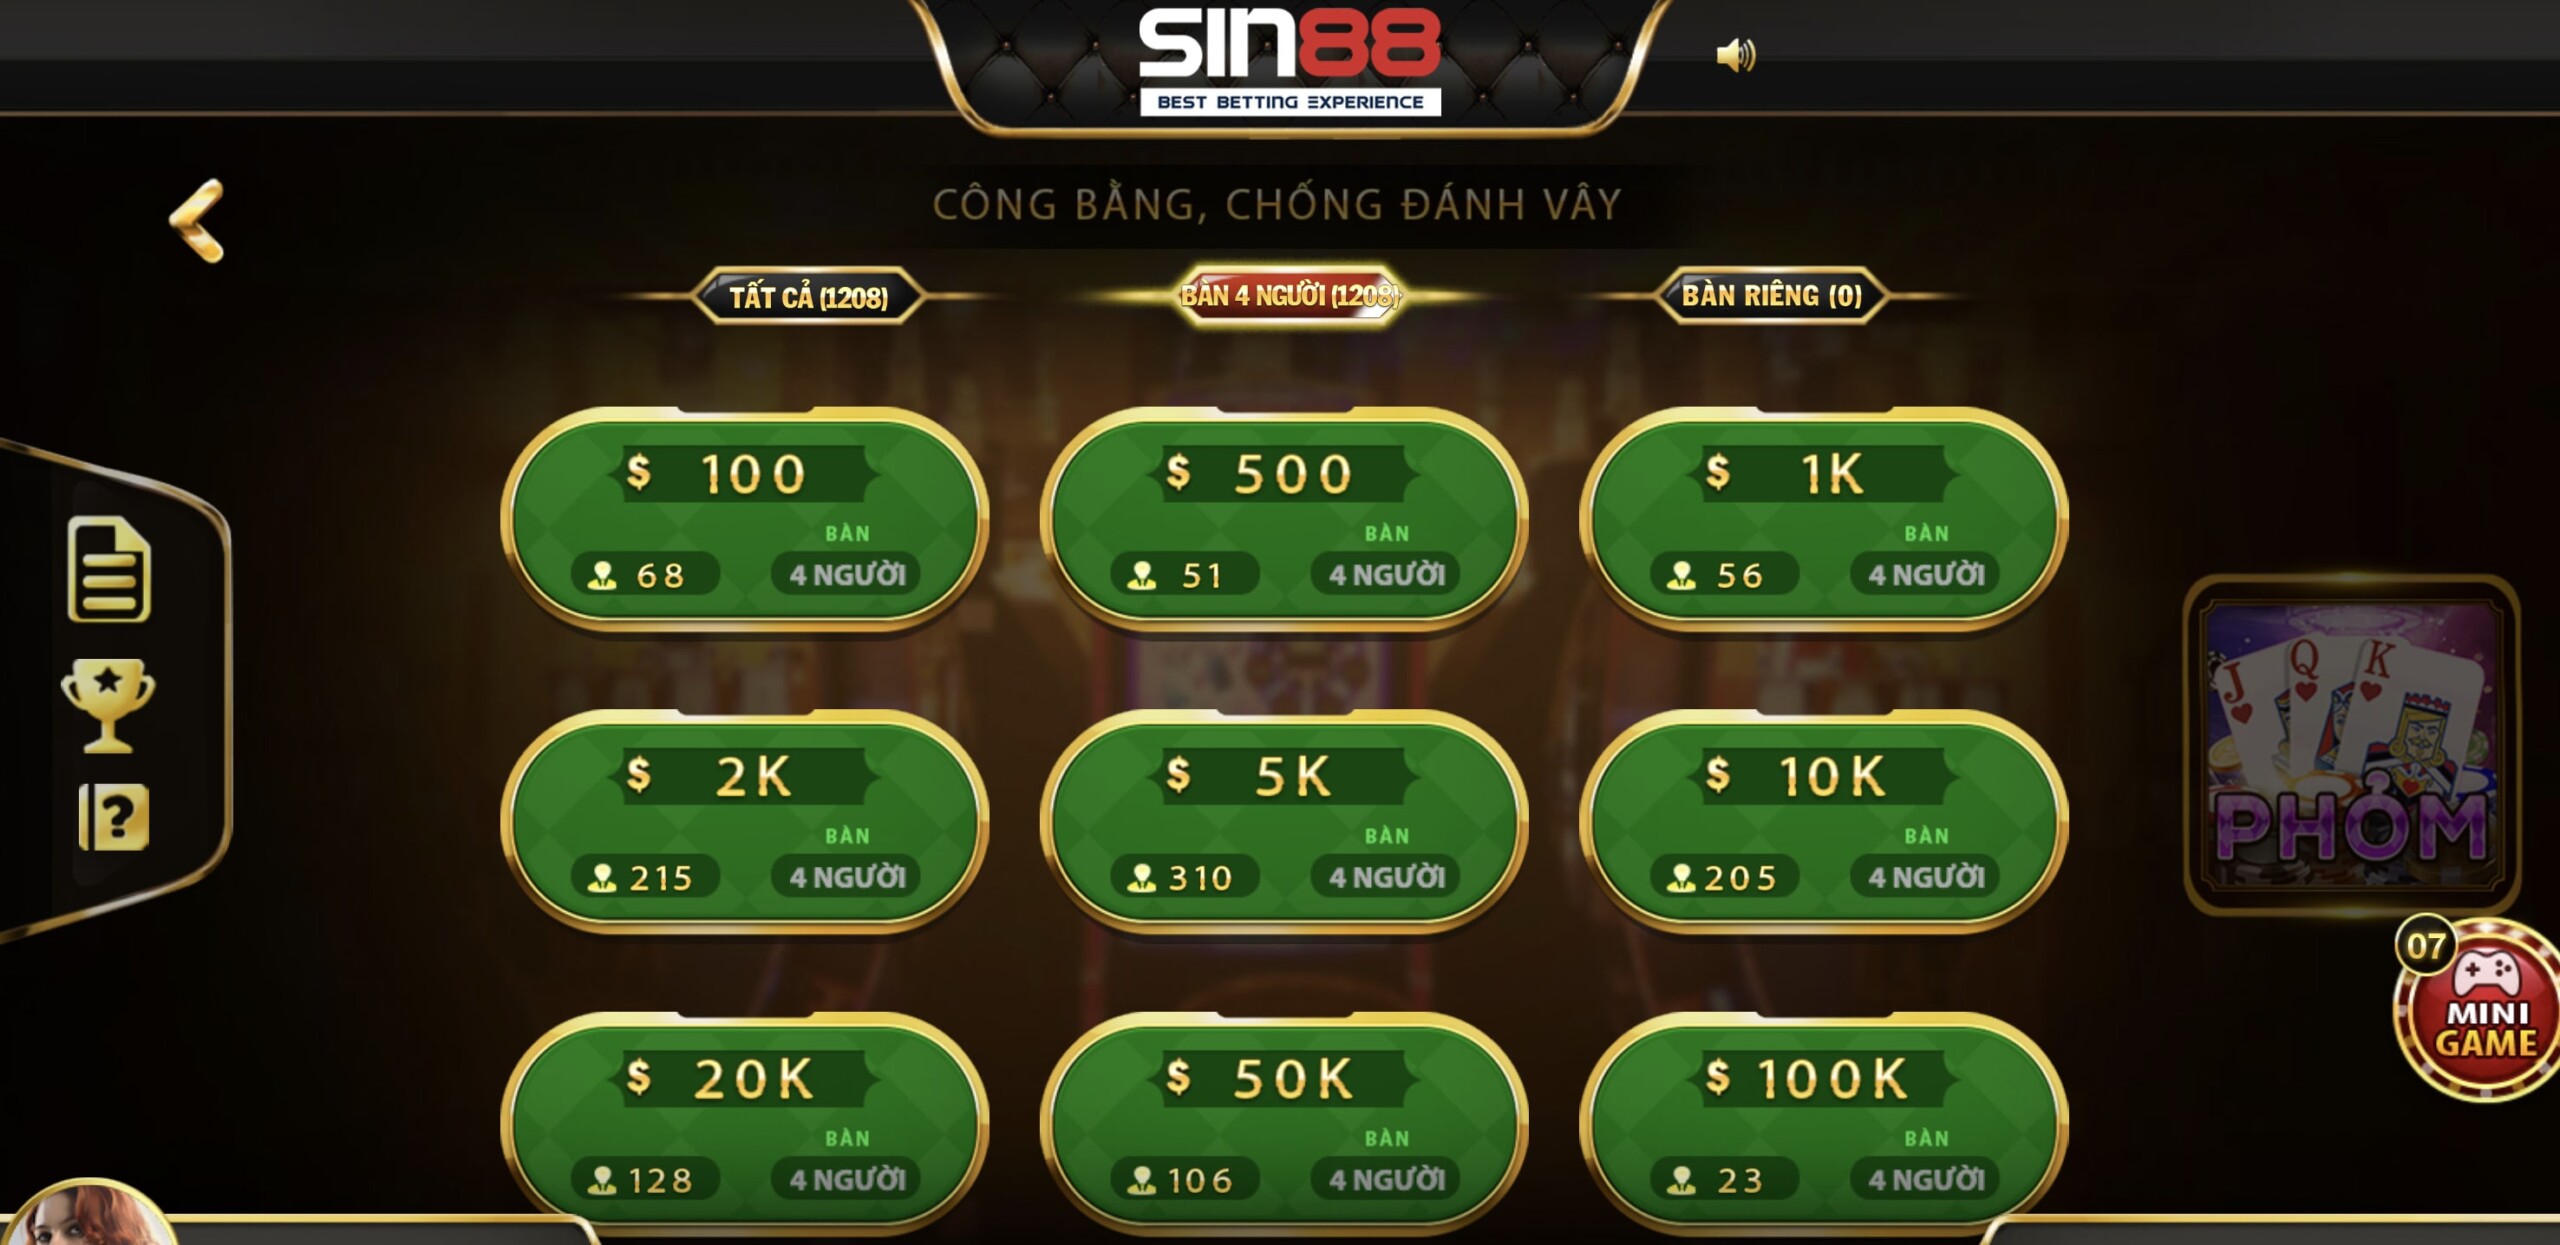 Bàn chơi và mức cược trong game bài phỏm Sin88